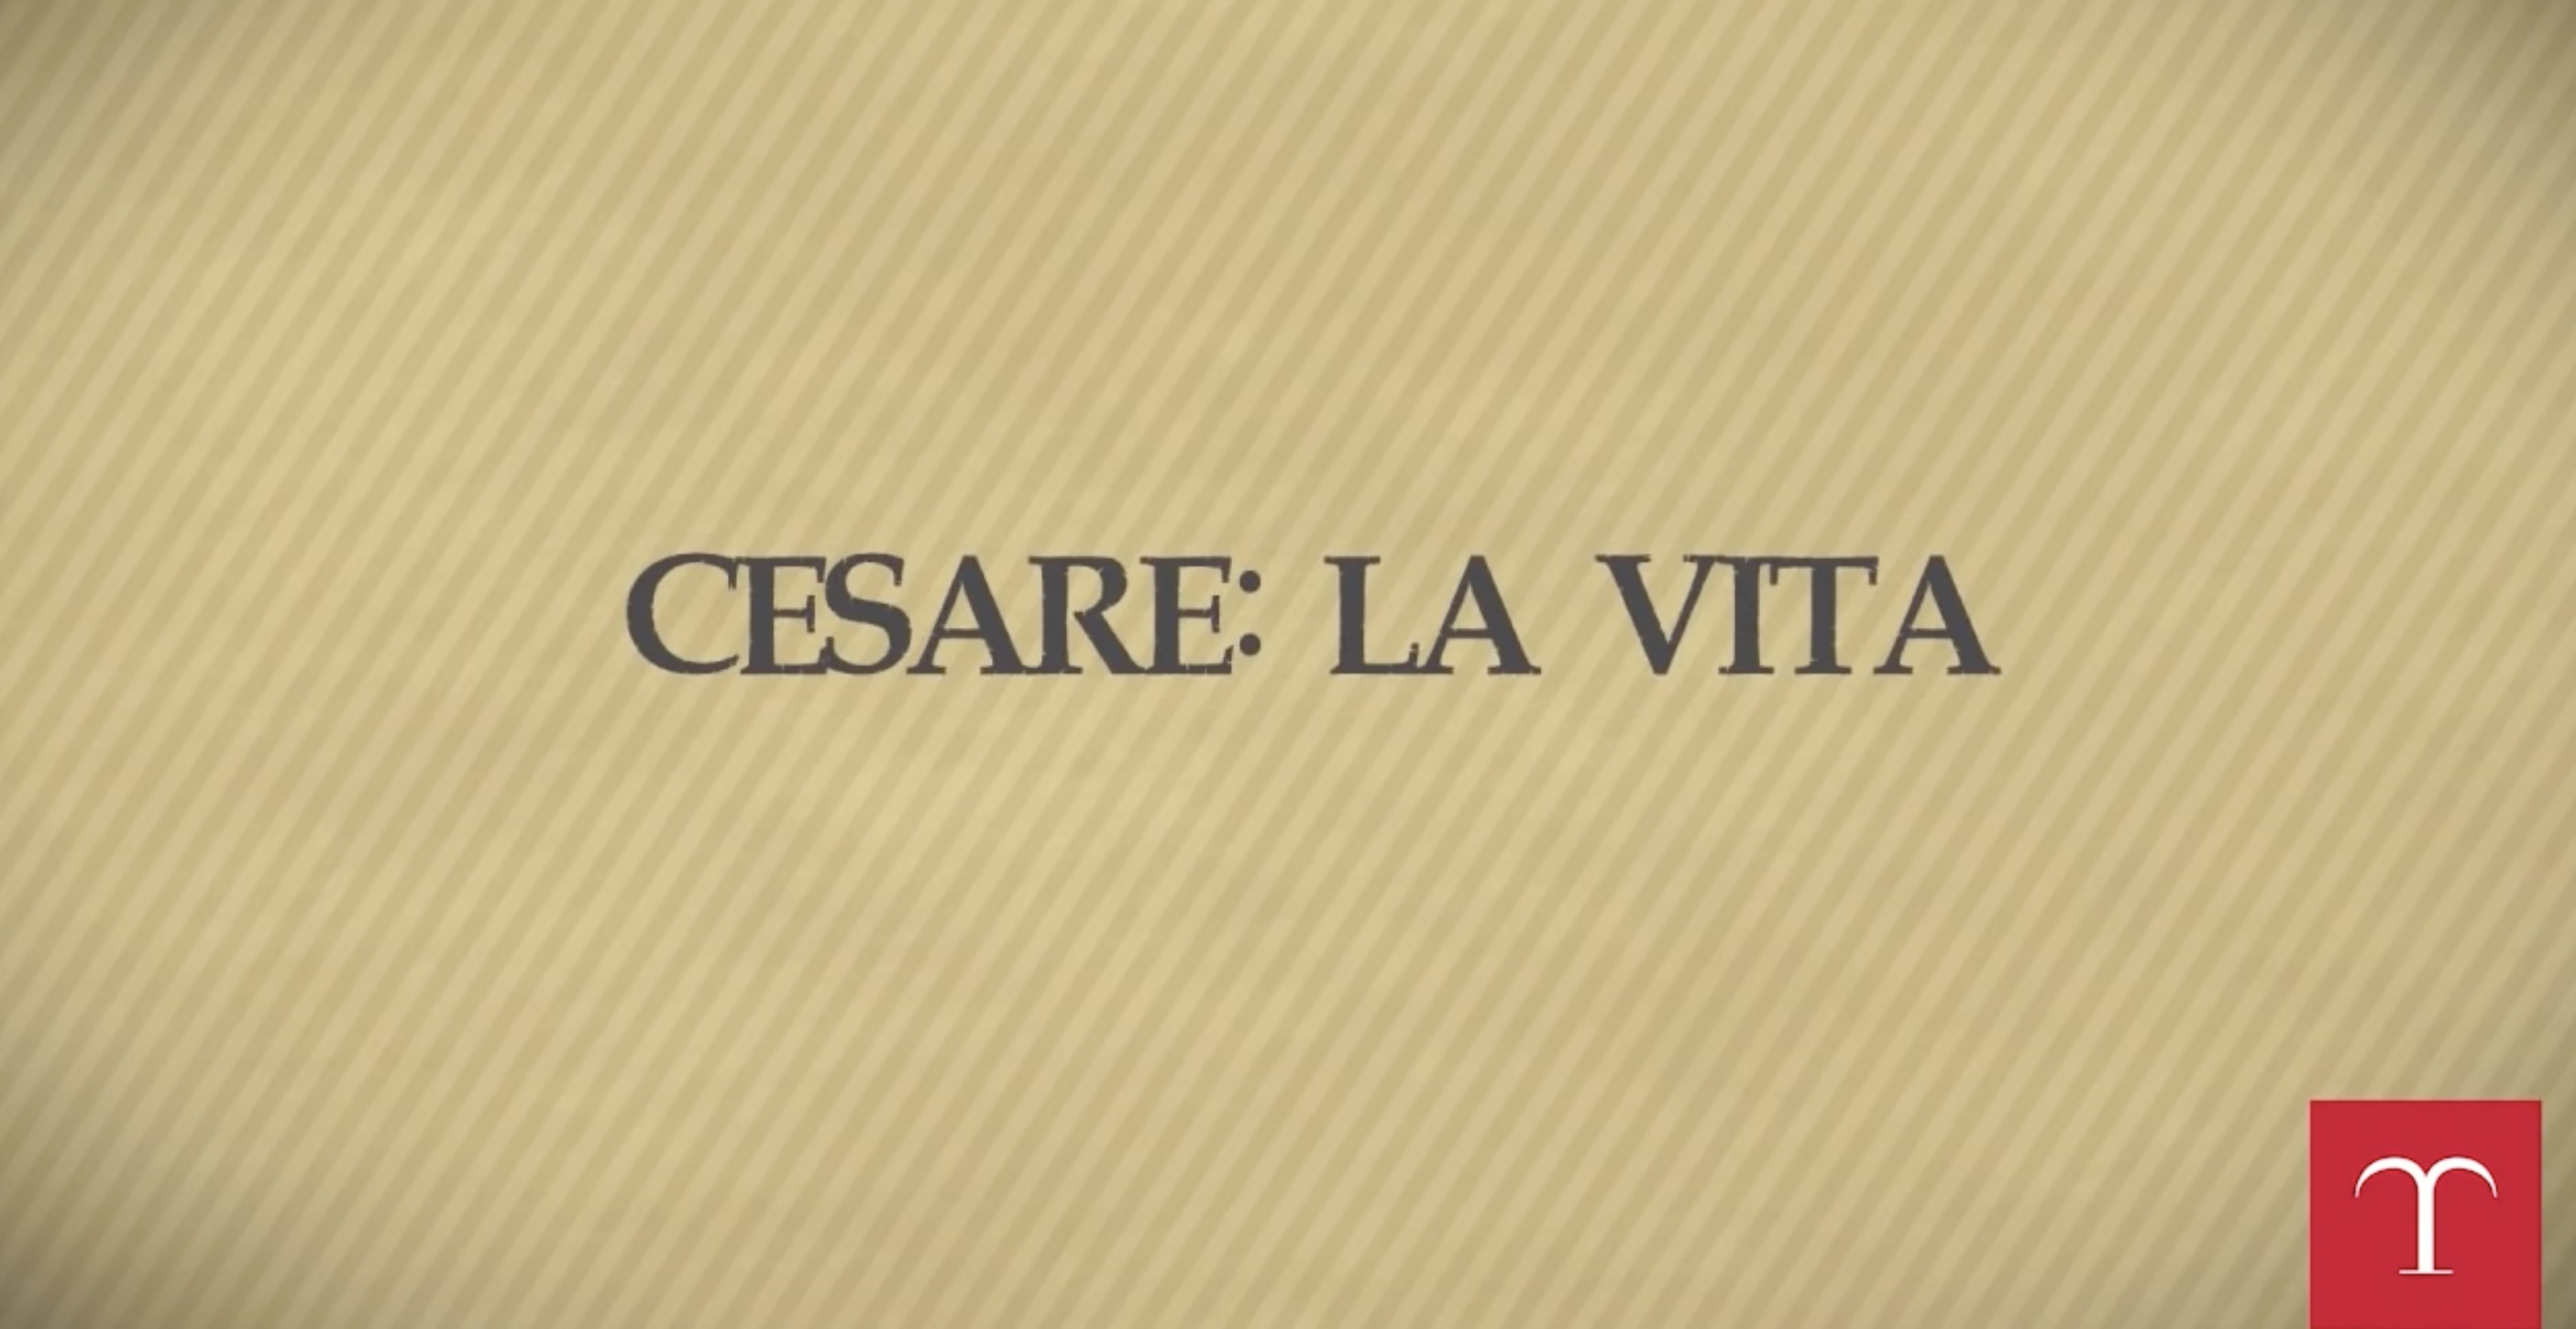 Cesare: la vita